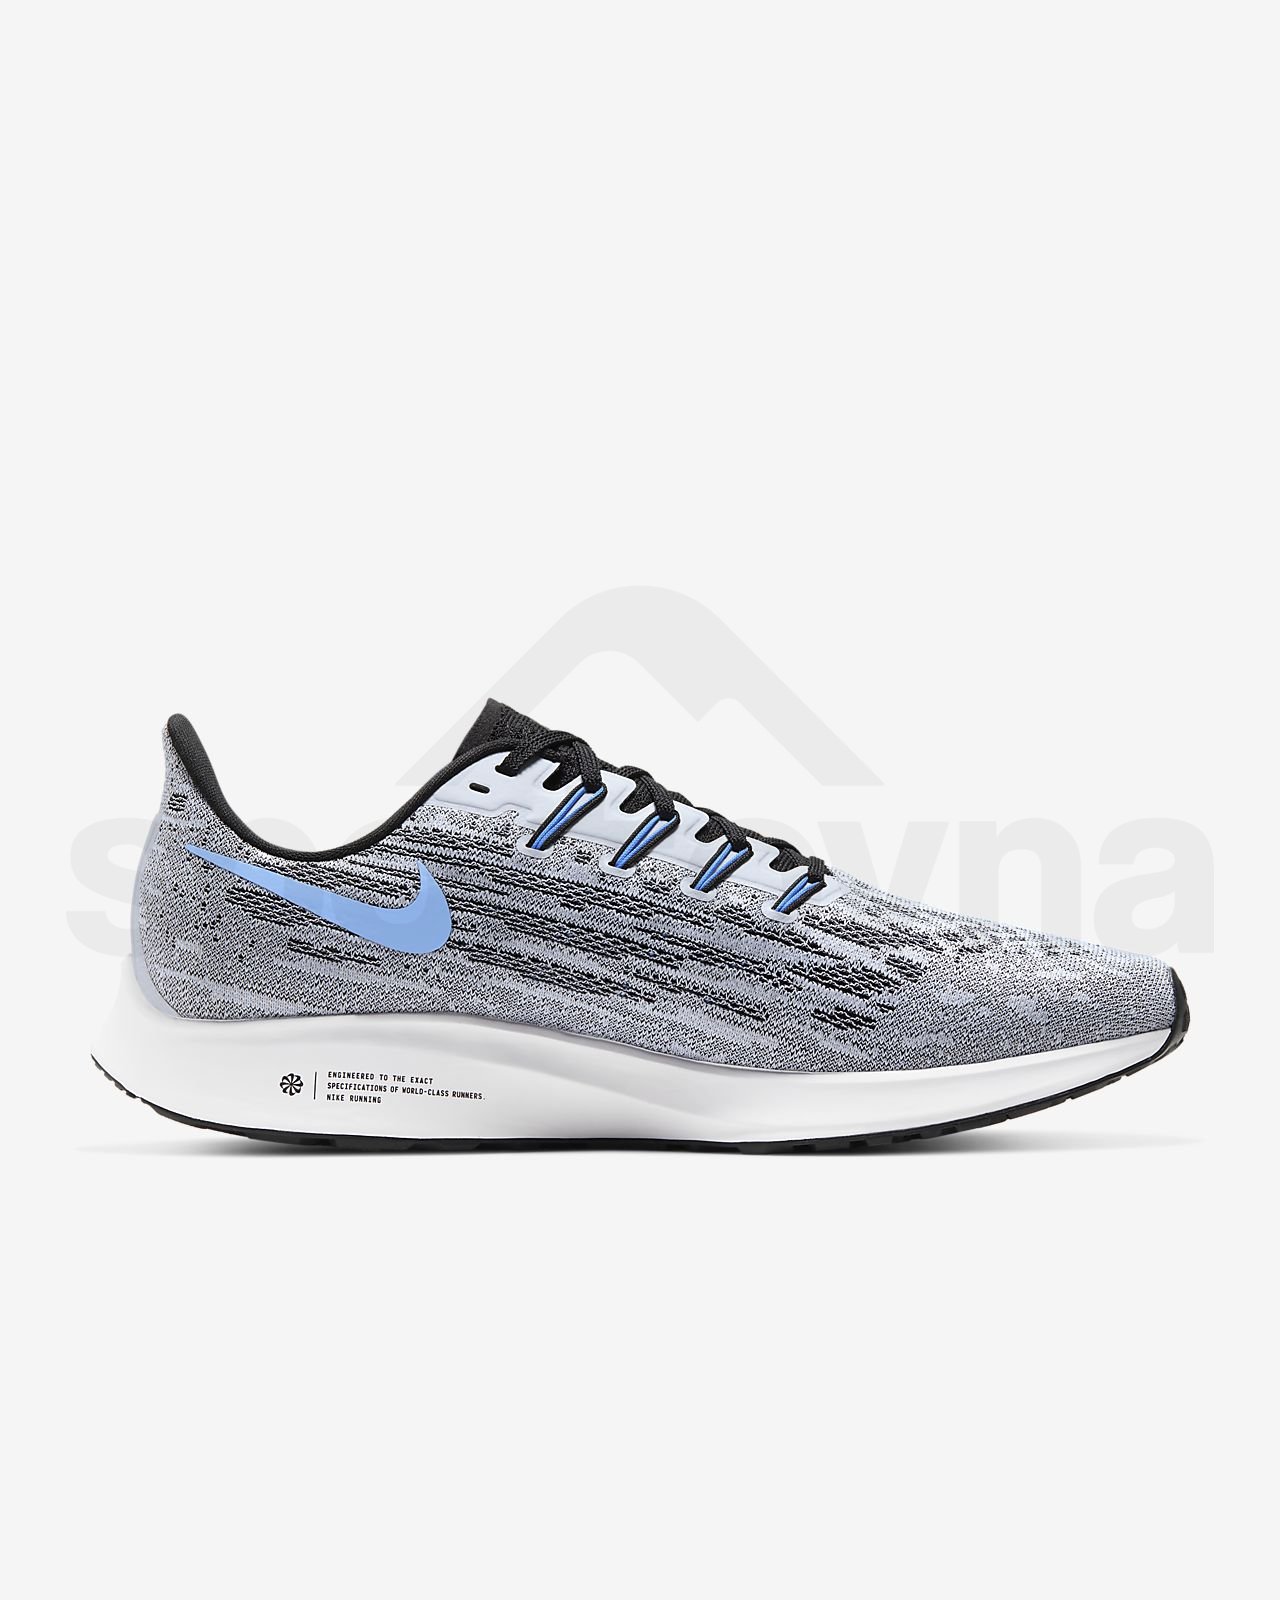 Obuv Nike Air Zoom Pegasus 36 - šedá/modrá/bílá